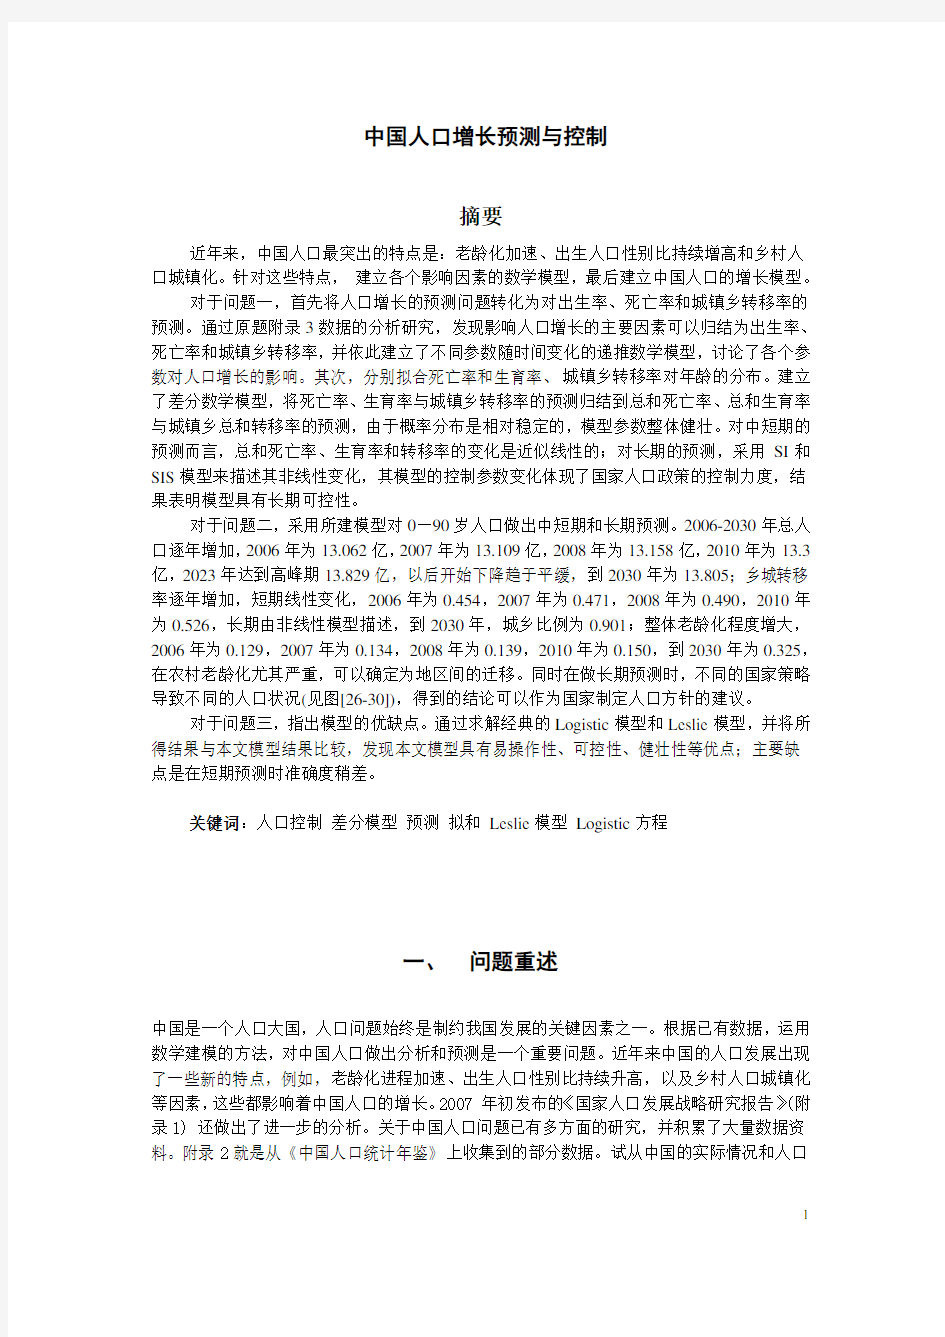 2007年全国数学建模大赛A题中国人口增长预测与控制题目和论文赏析(1)(1)